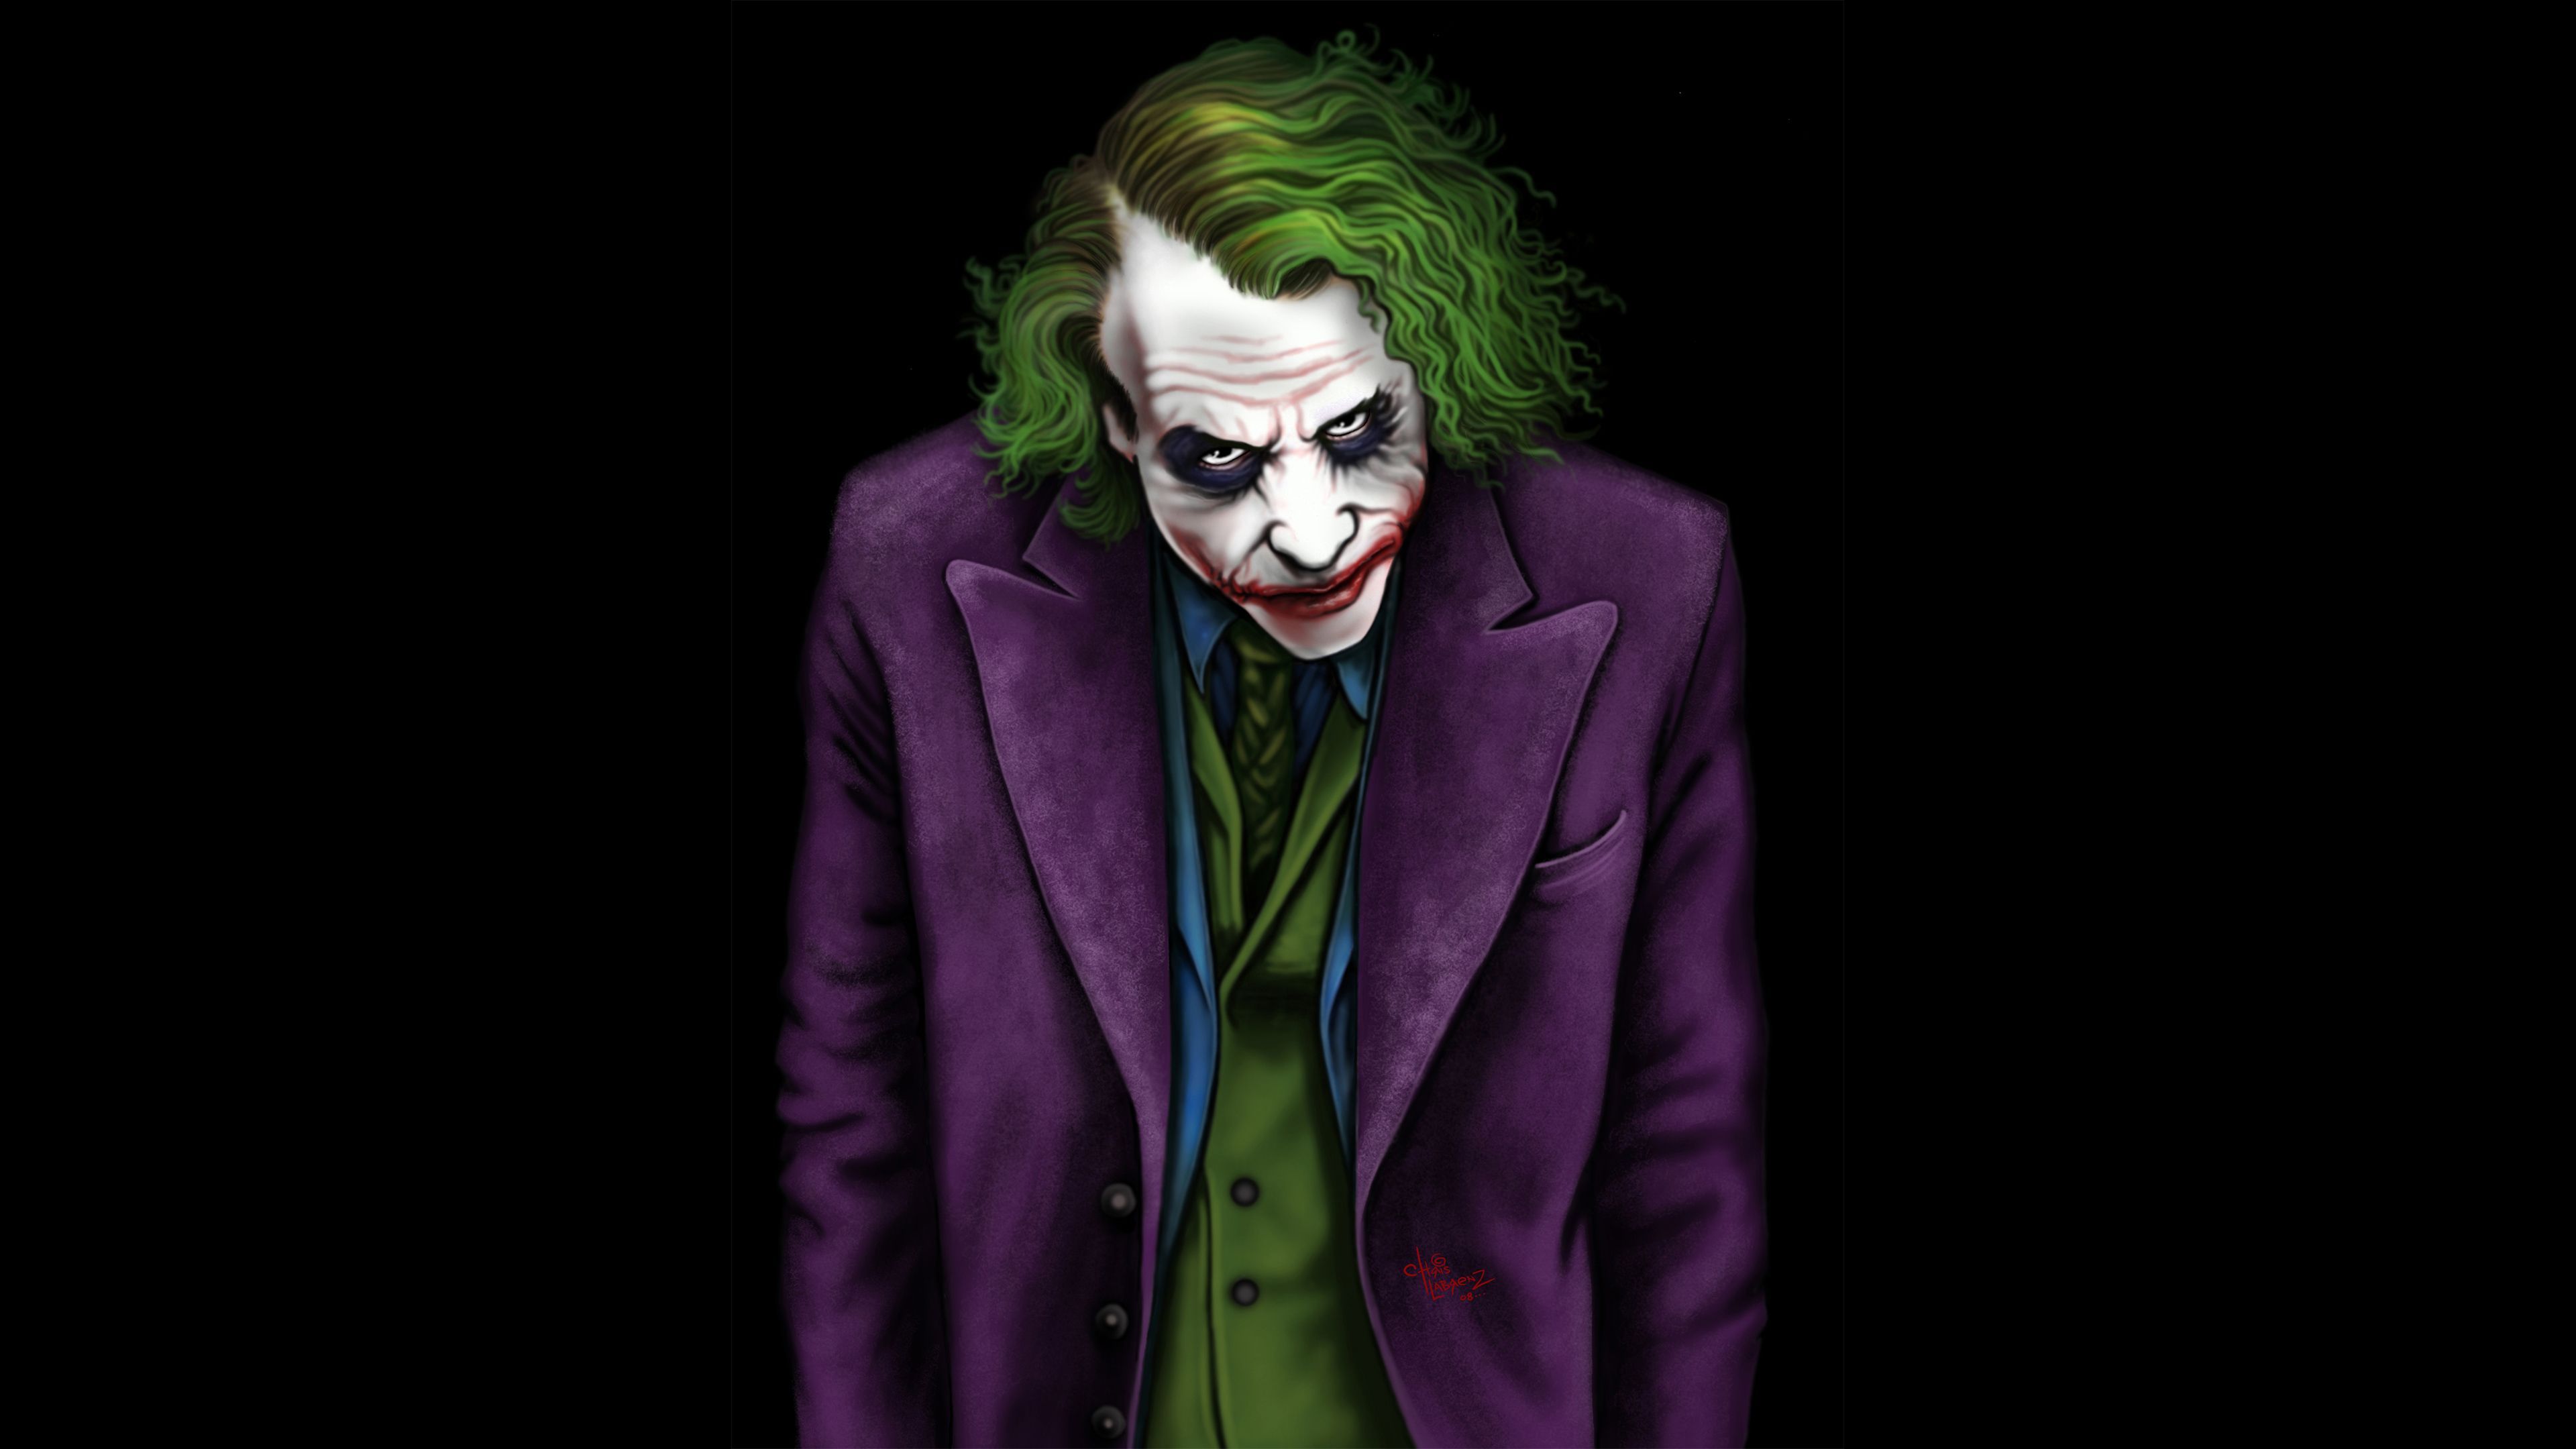 Joker Heath Ledger Artwork 4k Supervillain Wallpaper, Superheroes Wallpaper, Joker Wallpaper, Hd Wallpaper, Digital Art. Joker Wallpaper, Joker Heath, Joker